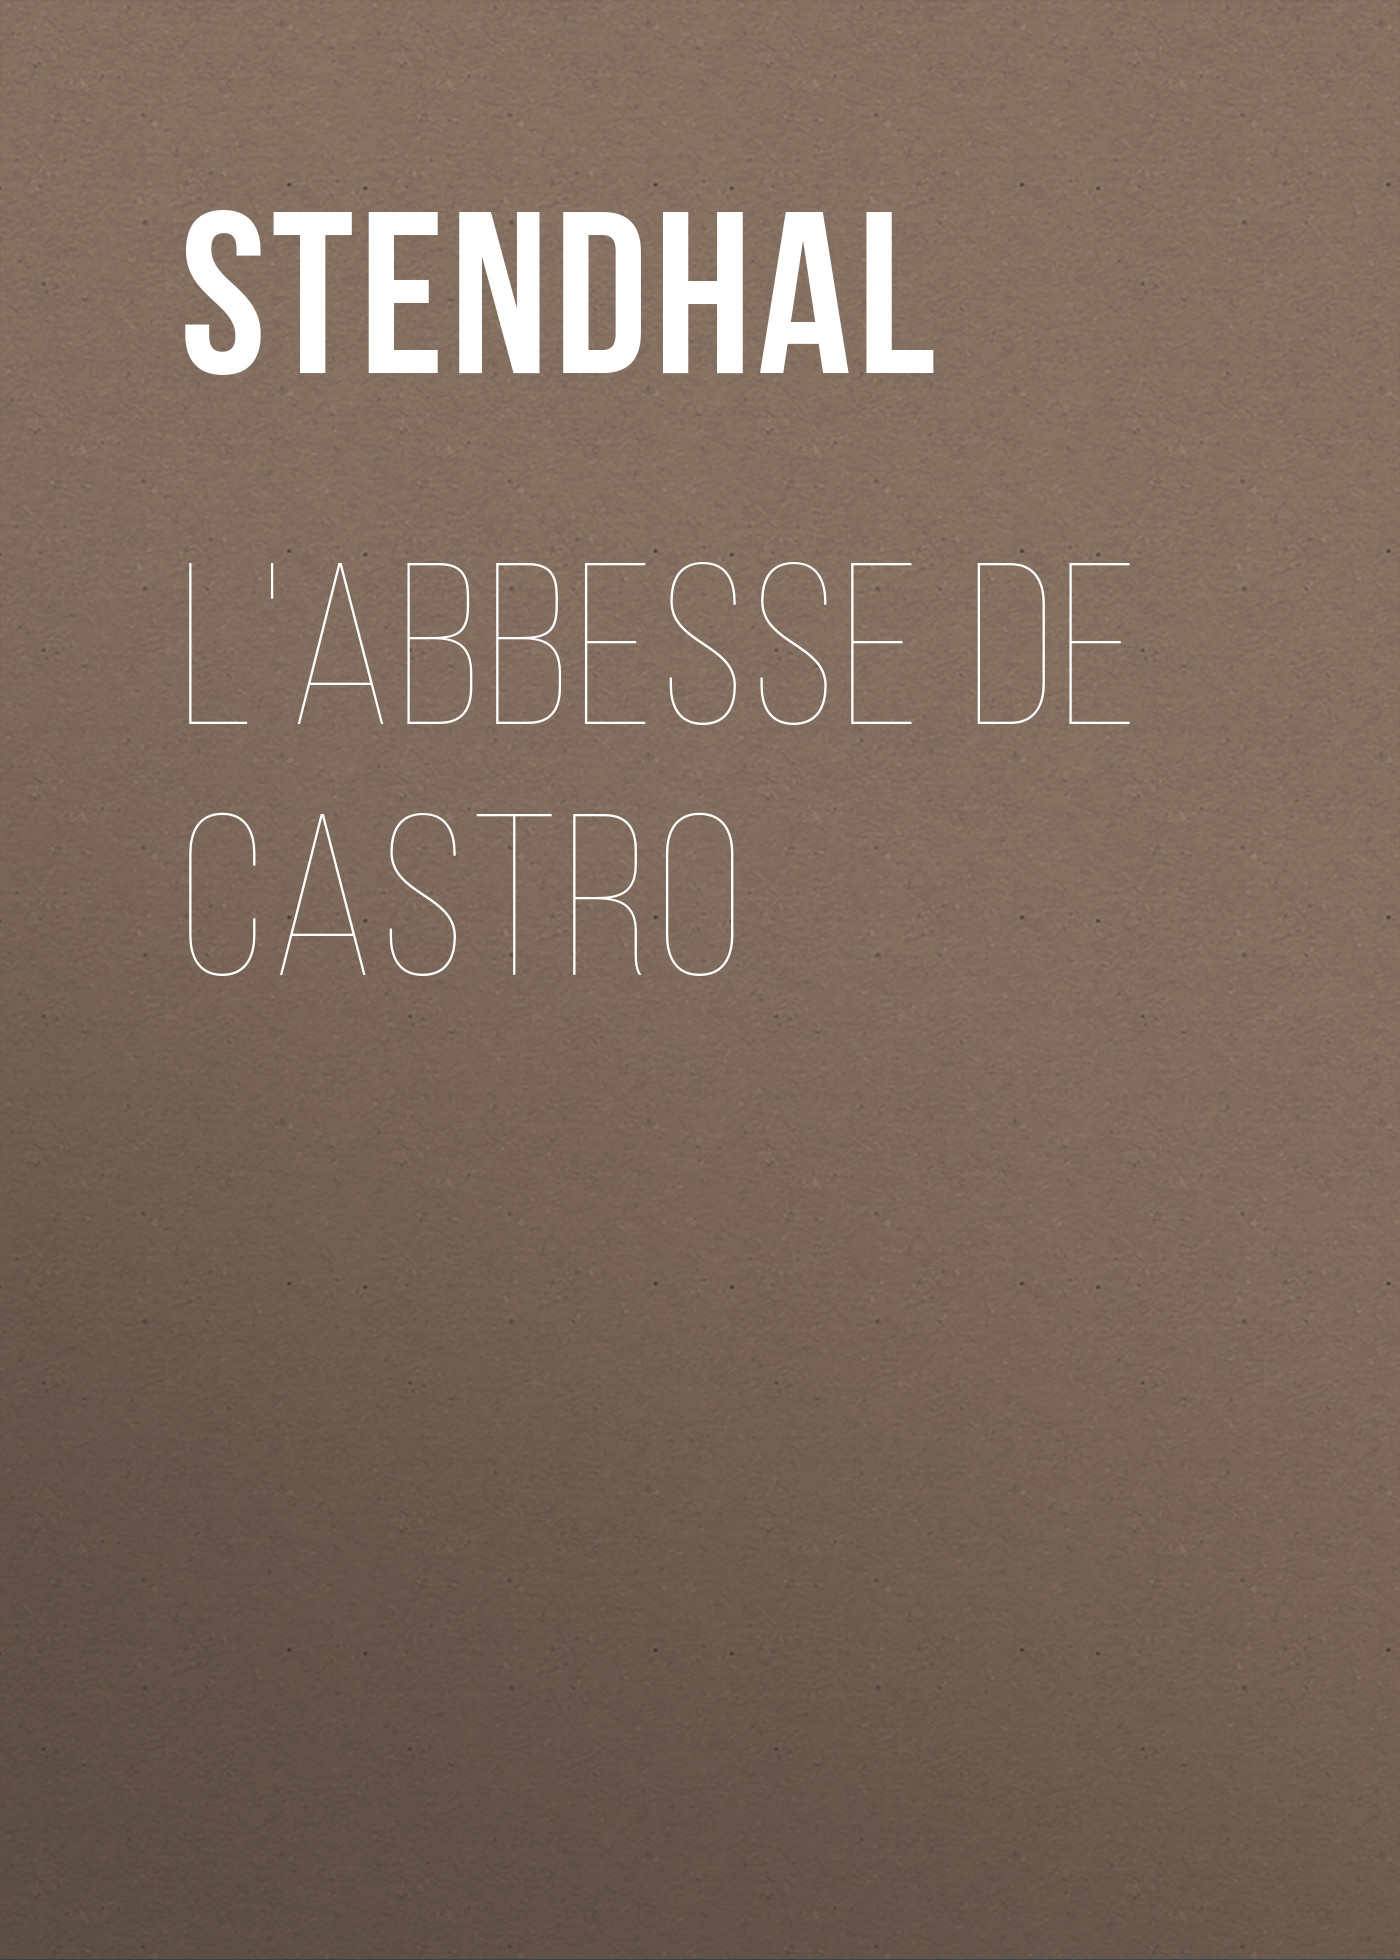 Книга L'Abbesse De Castro из серии , созданная  Stendhal, может относится к жанру Литература 19 века, Зарубежная старинная литература, Зарубежная классика. Стоимость электронной книги L'Abbesse De Castro с идентификатором 25476887 составляет 0 руб.